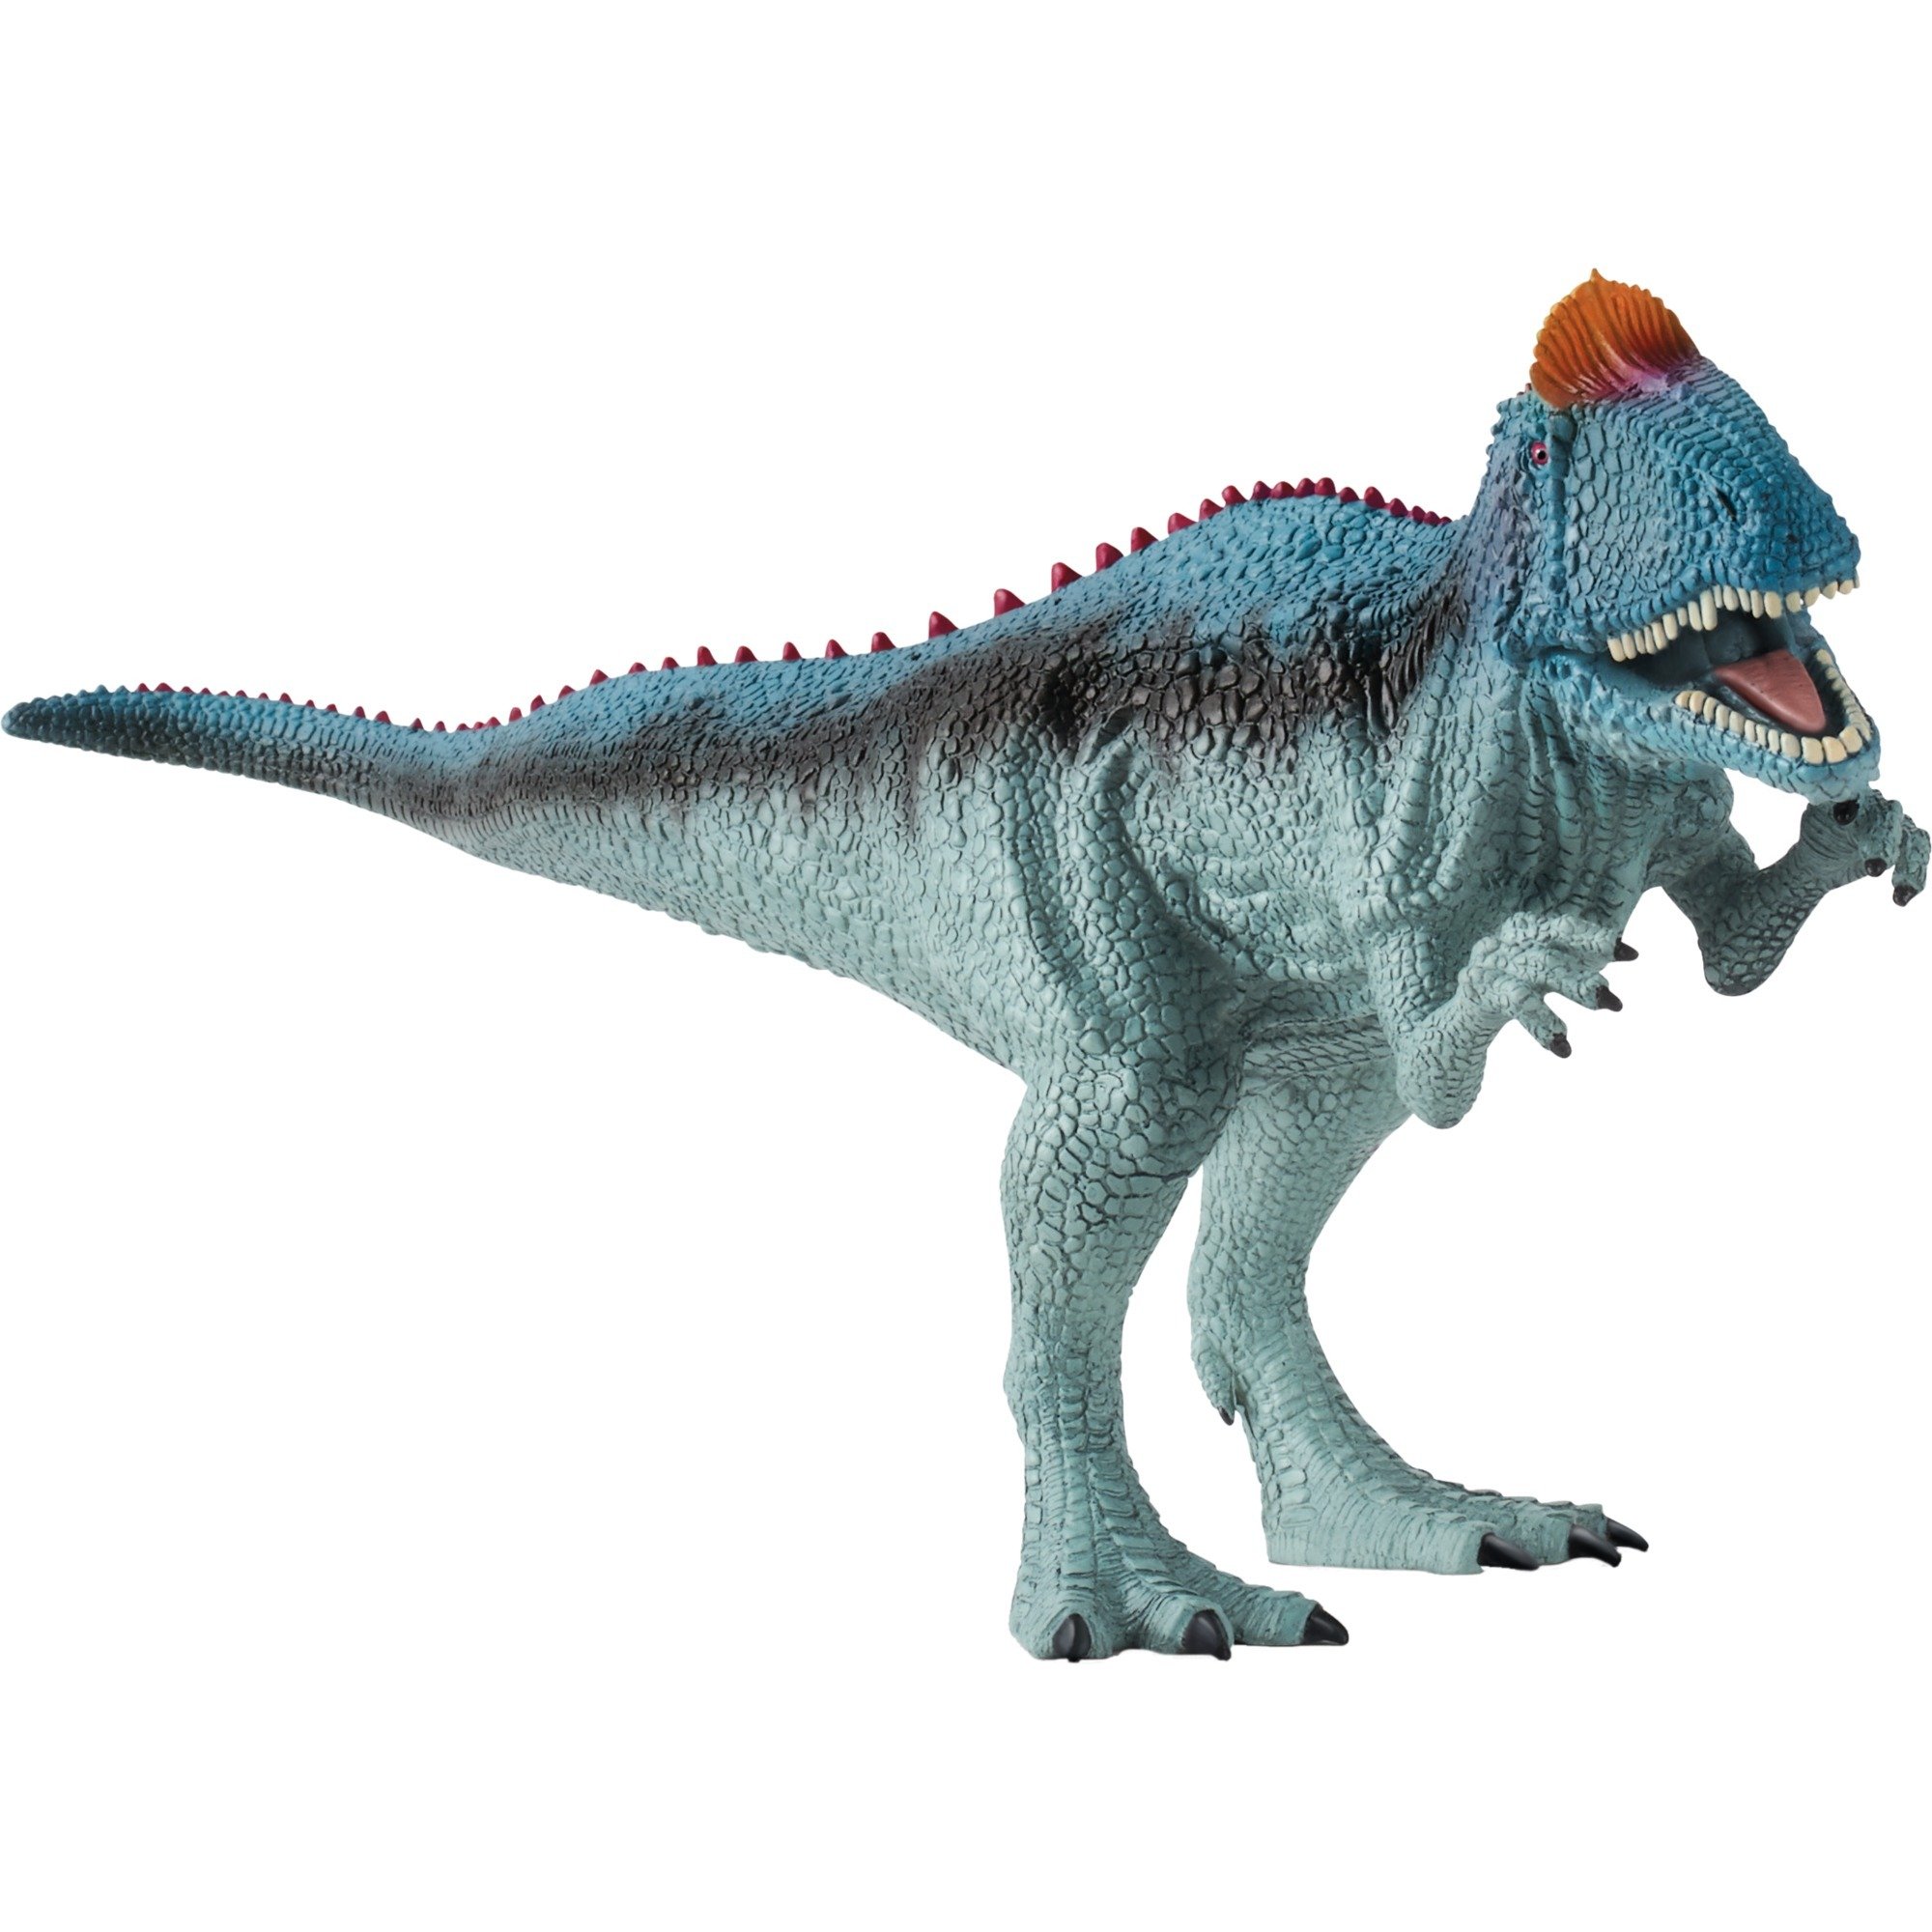 Image of Alternate - Dinosaurs Cryolophosaurus, Spielfigur online einkaufen bei Alternate